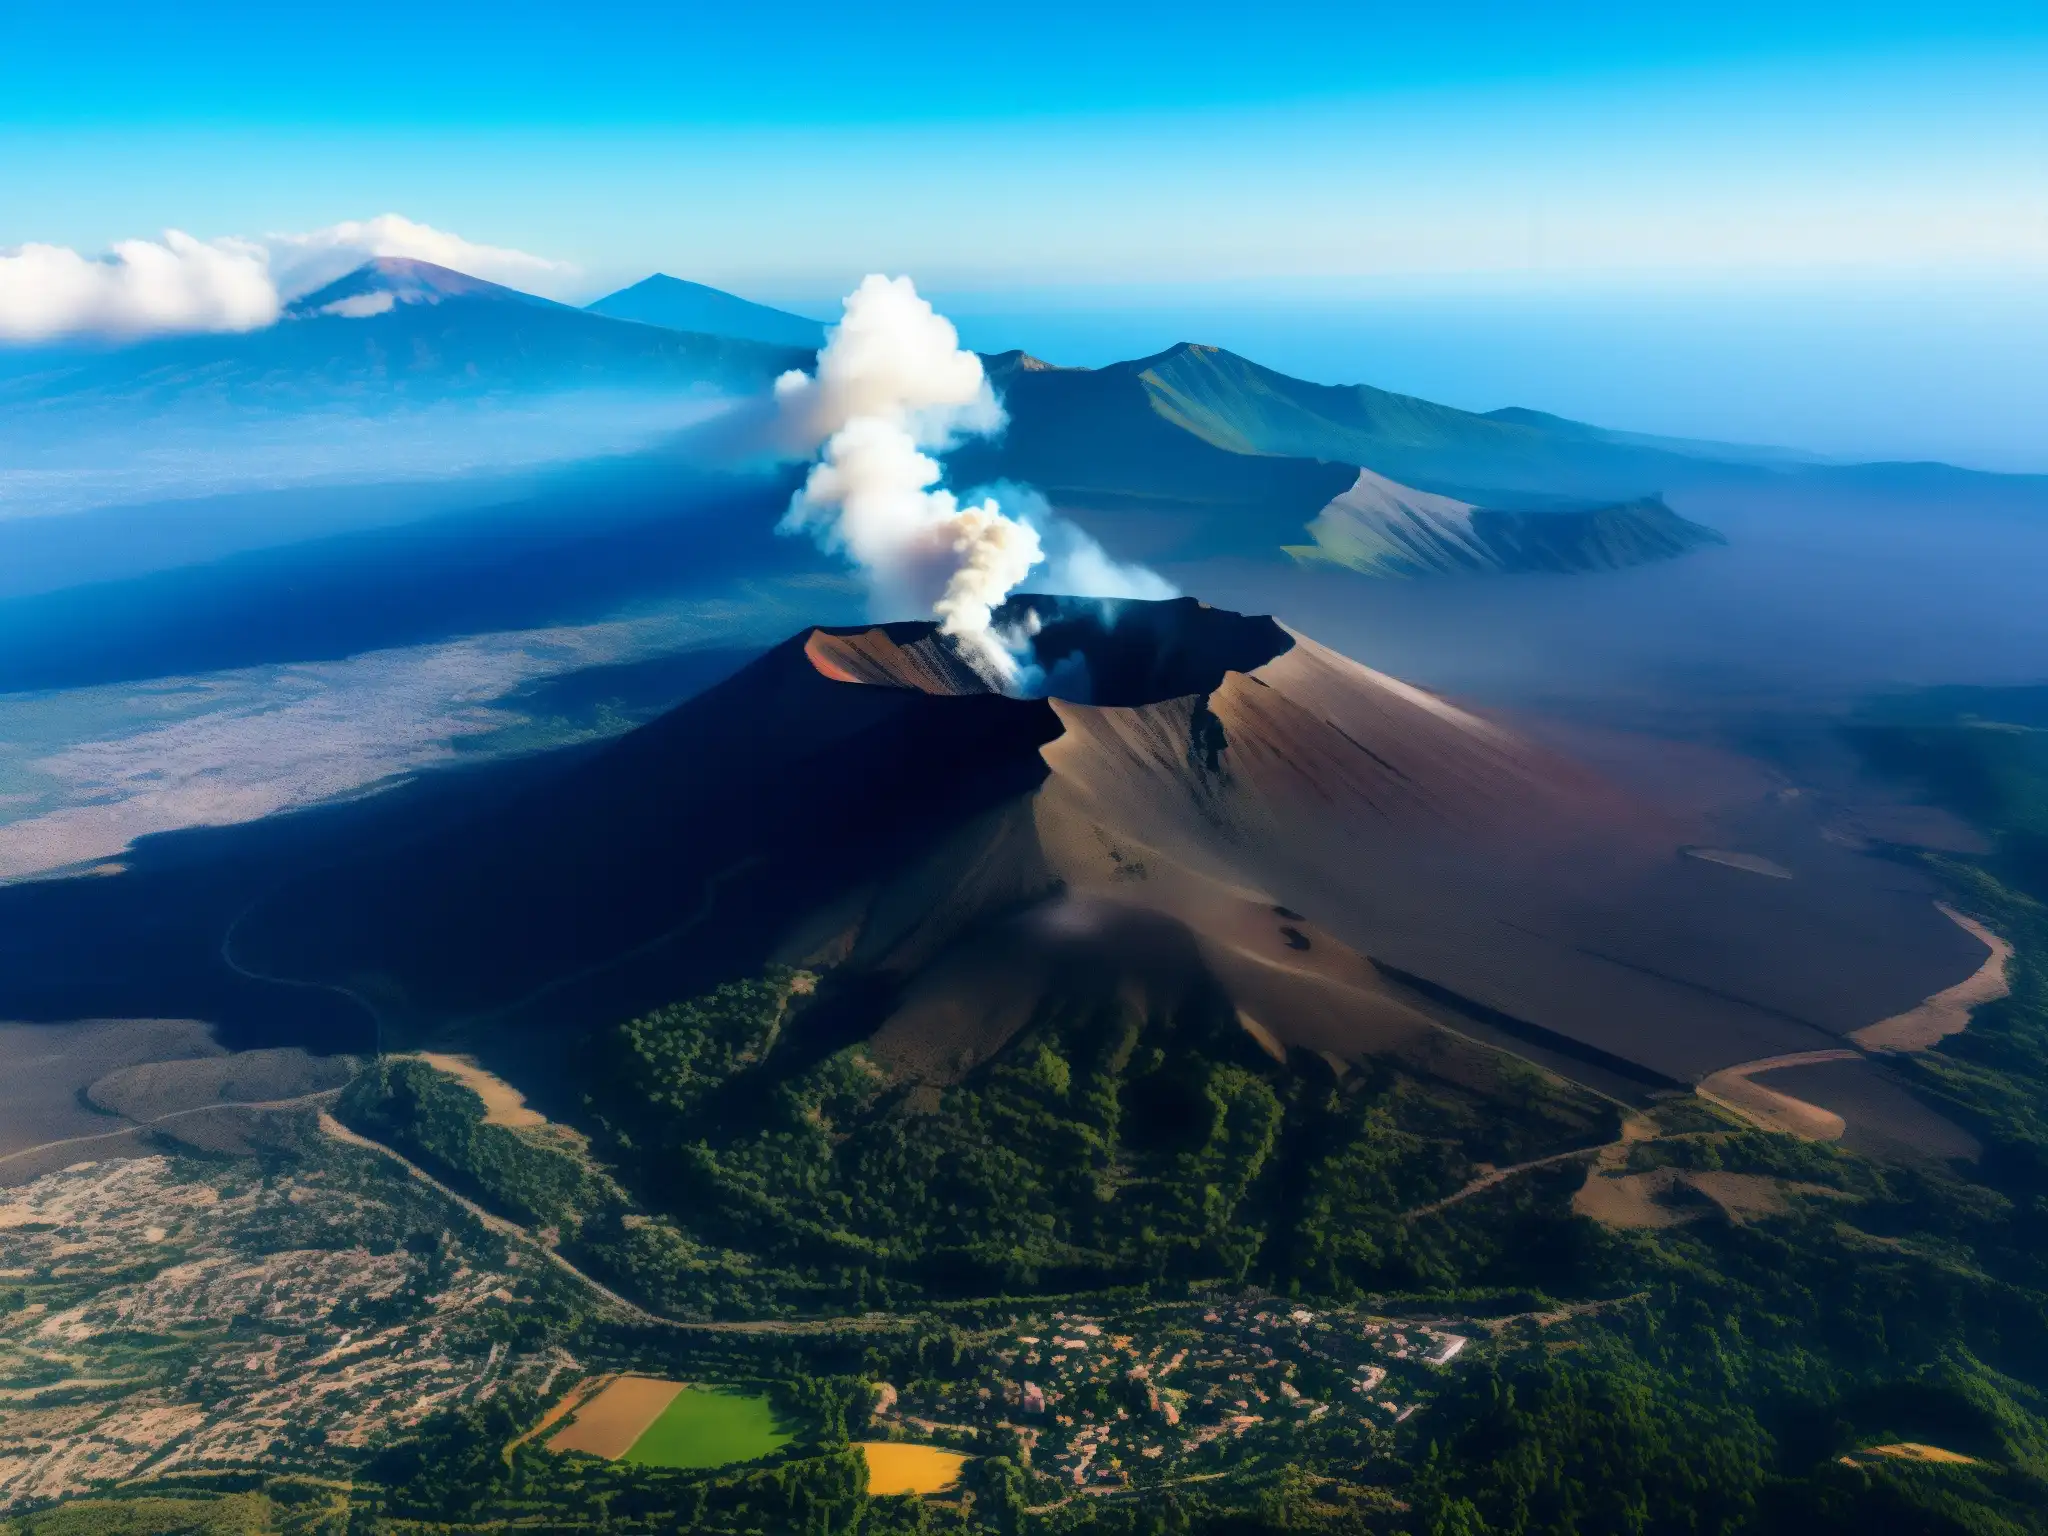 Vista aérea impresionante del majestuoso Monte Etna liberando humo blanco, con paisaje volcánico y pueblos sicilianos